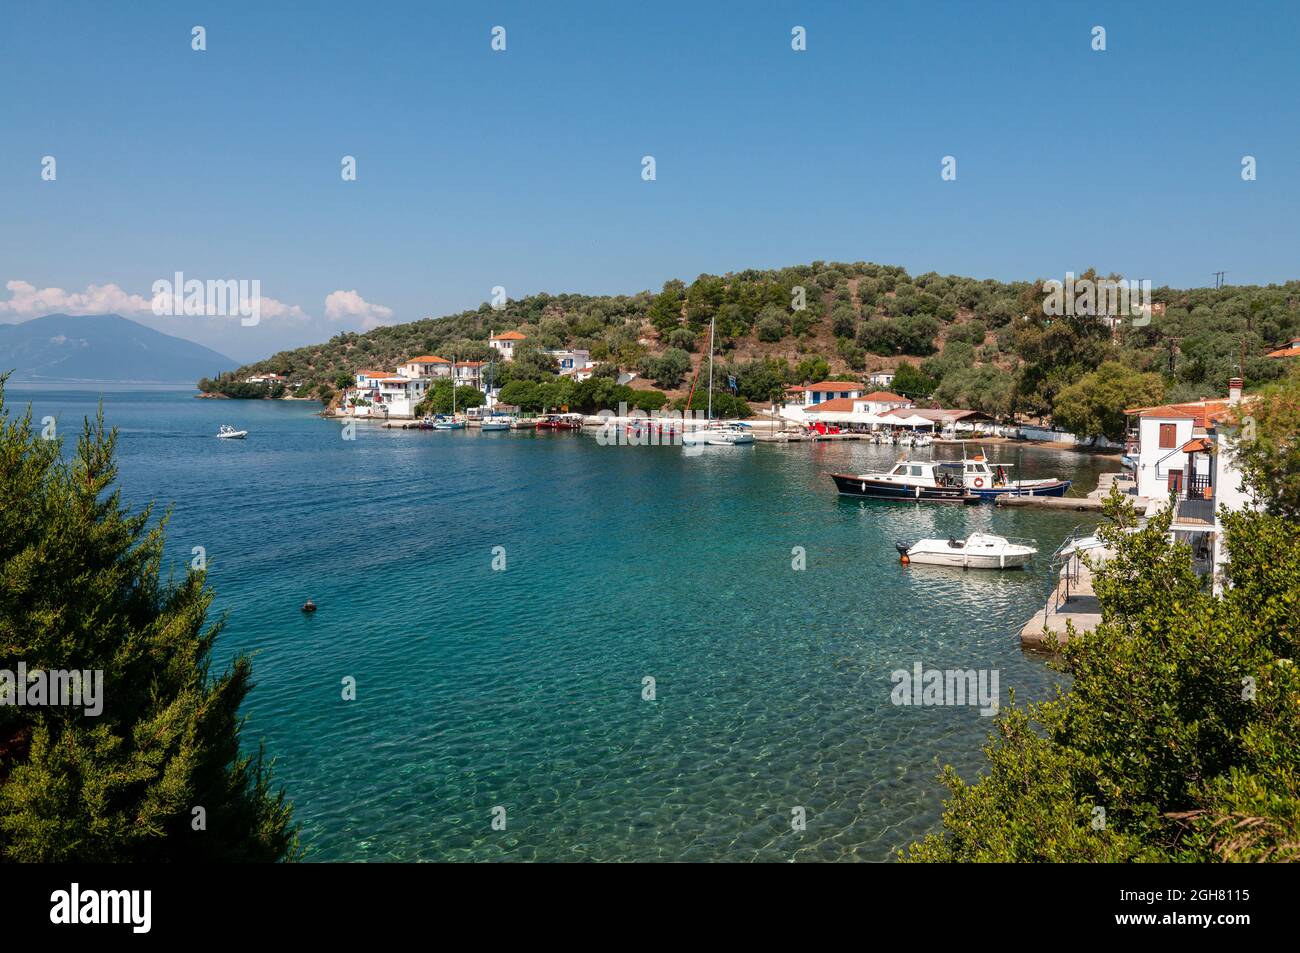 Der kleine Hafen von Paleo Trkeri auf der Insel Palio Trikeri an der Südküste der Halbinsel Pelion, Griechenland Stockfoto